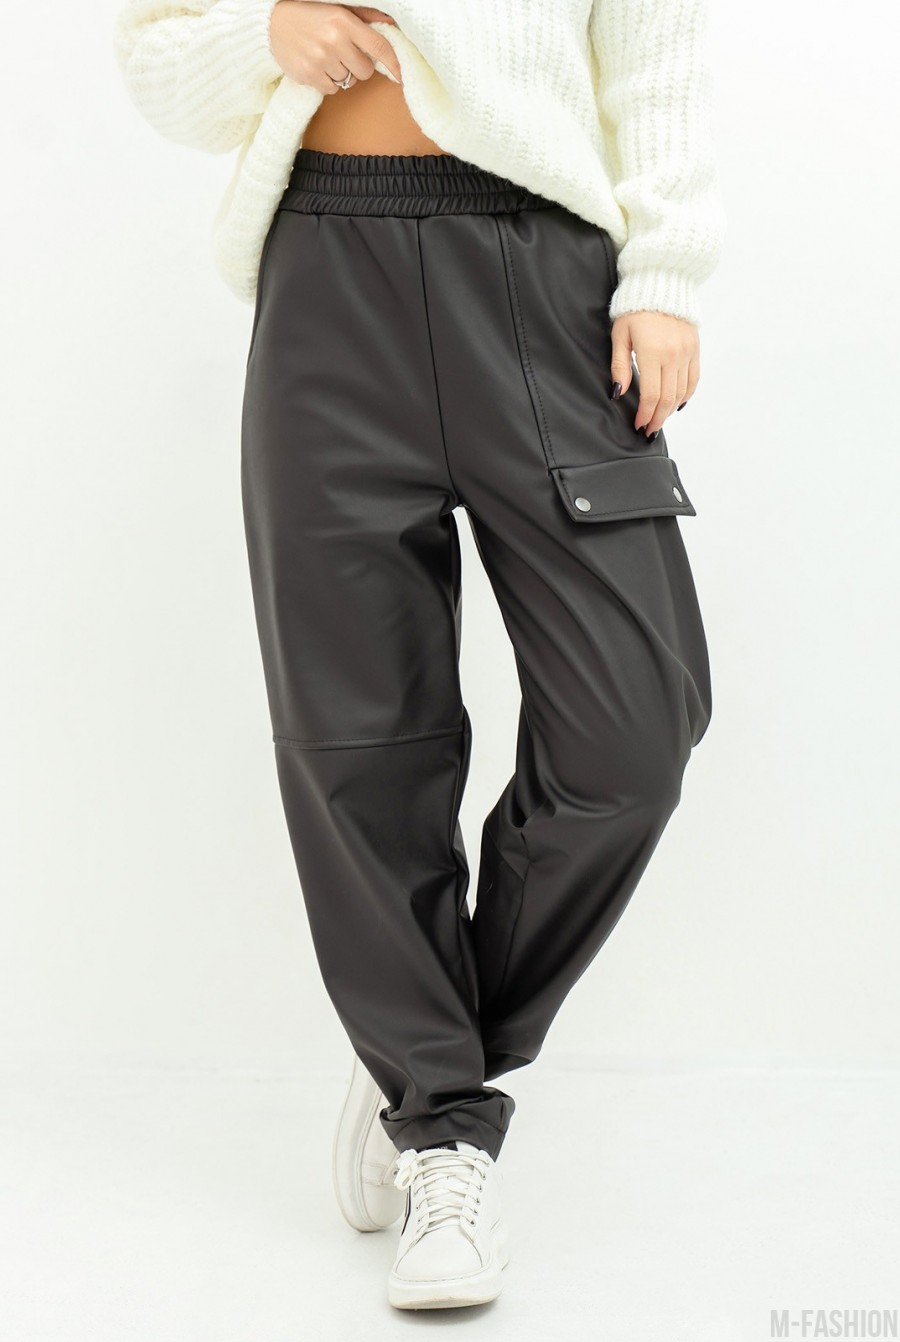 Черные теплые кожаные штаны с клапаном - Фото 1